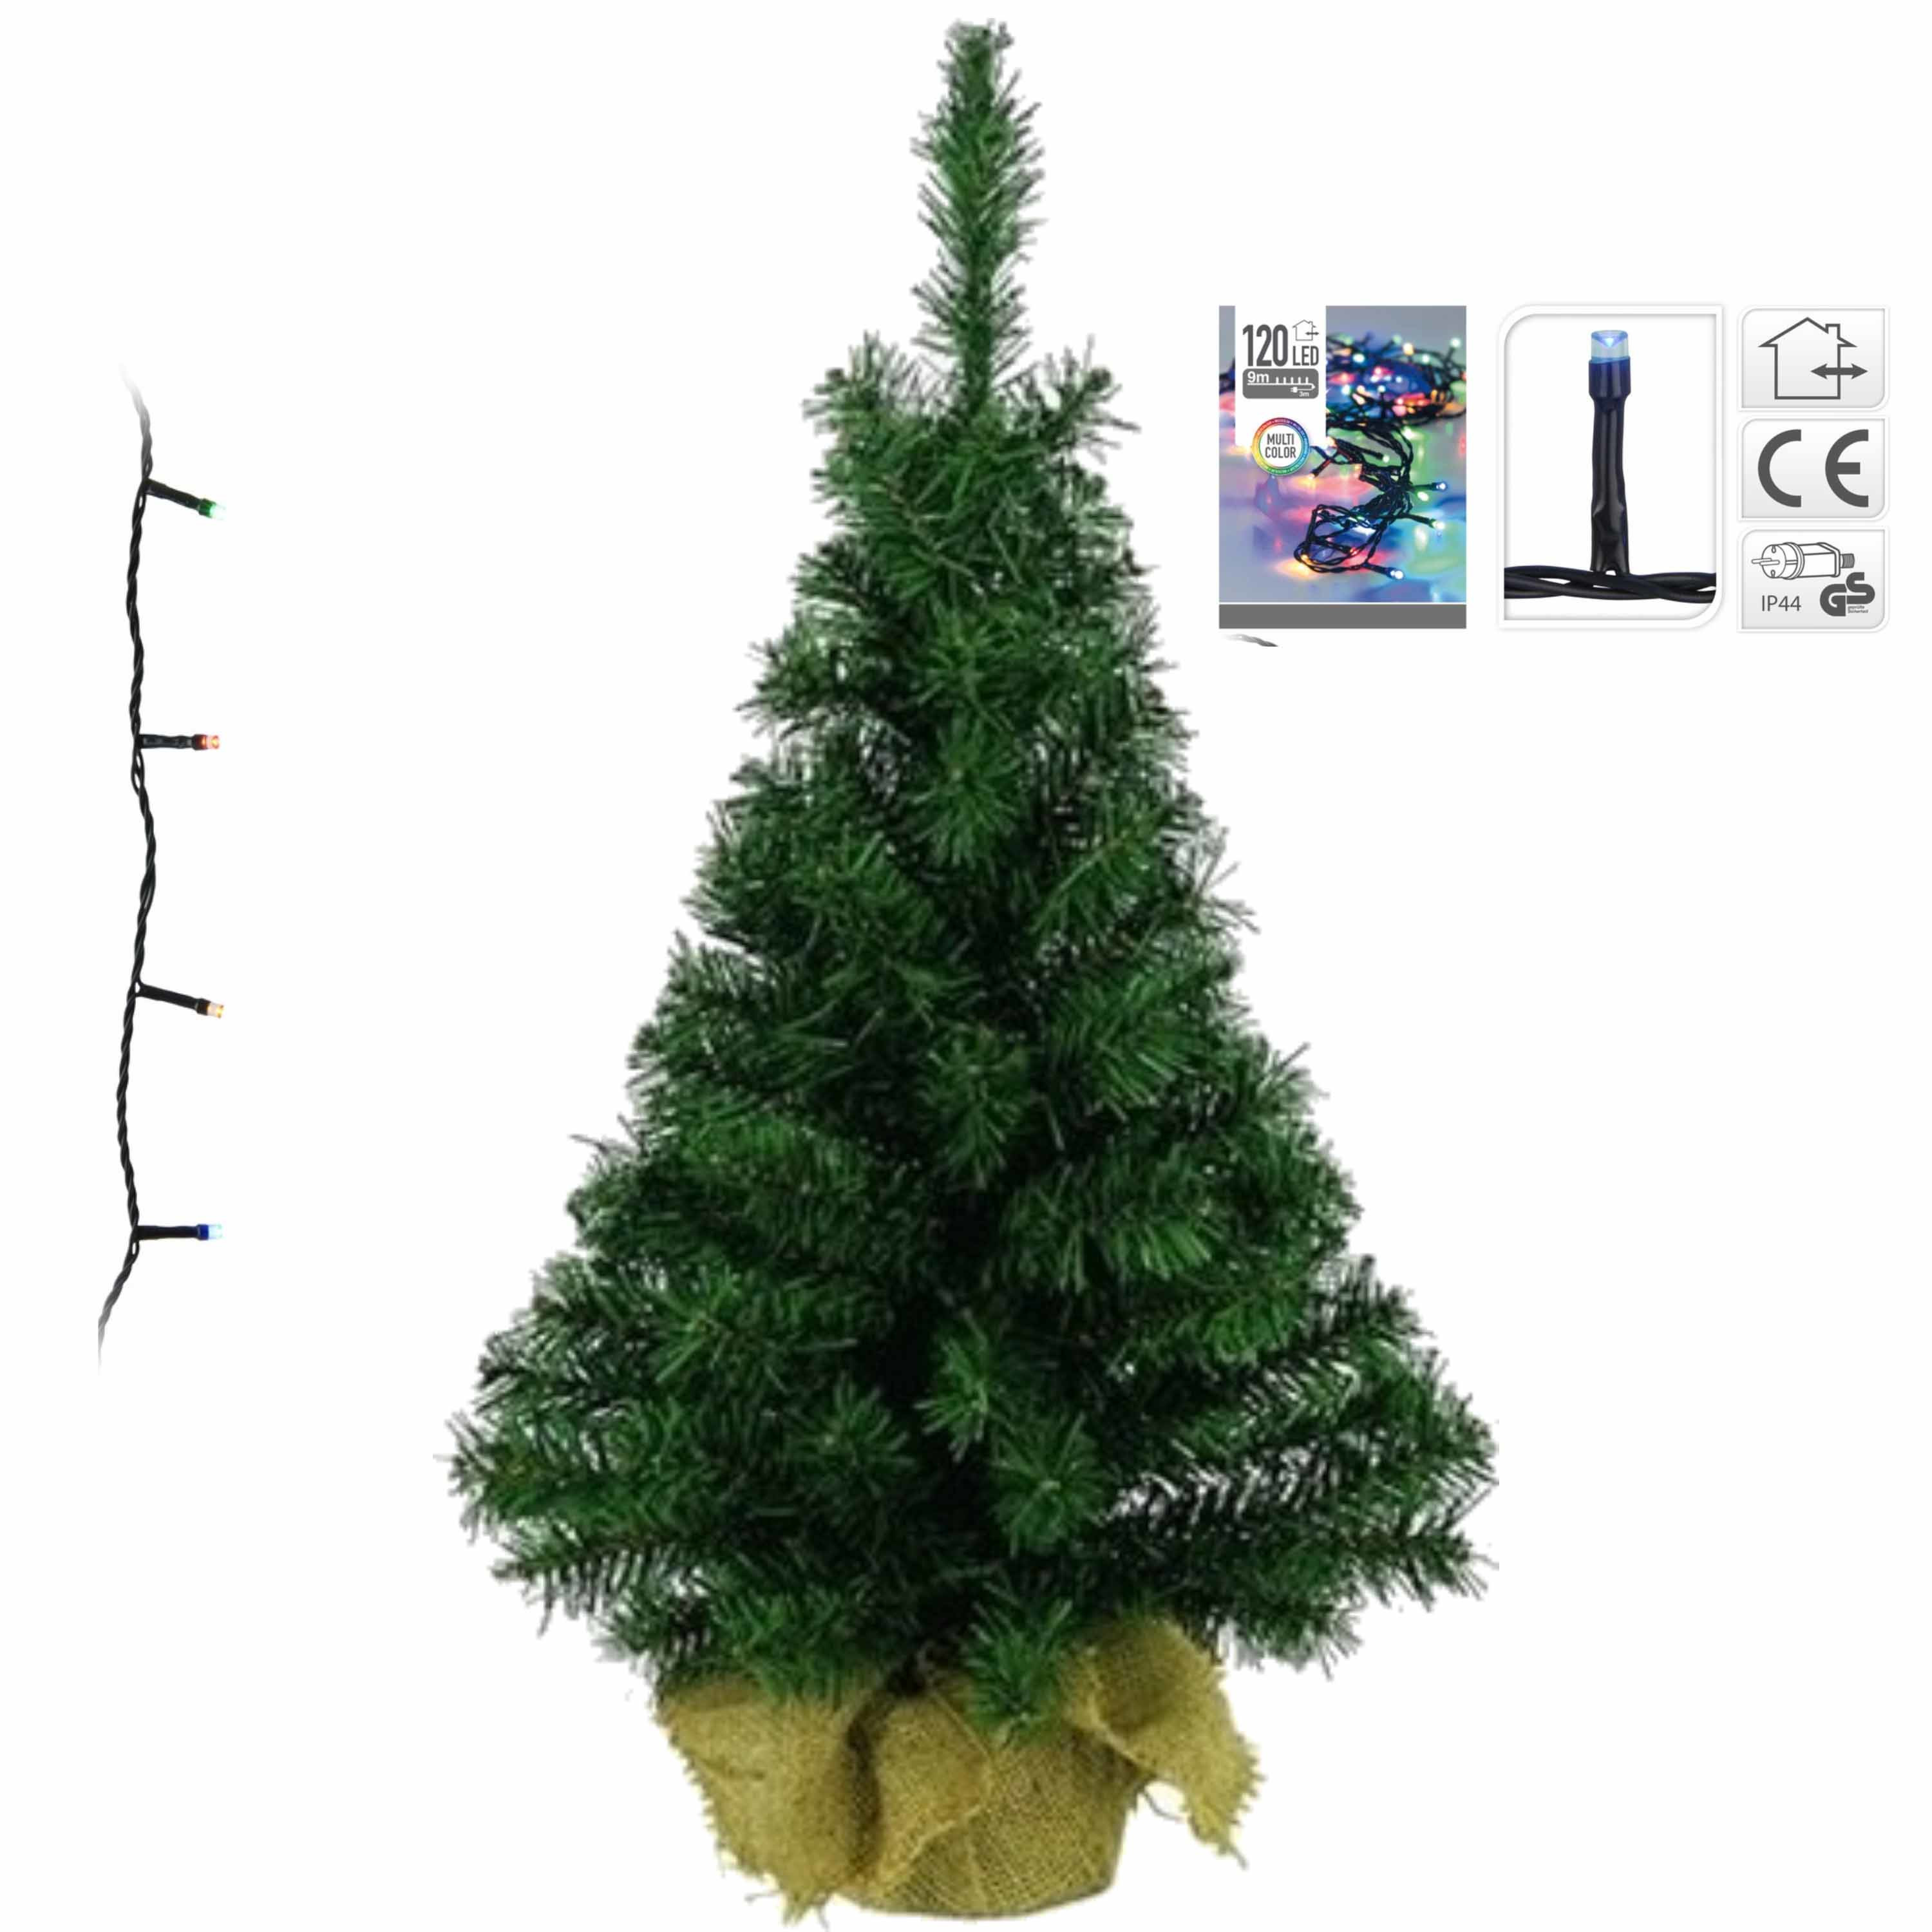 Volle kerstboom-kunstboom 75 cm inclusief gekleurde verlichting